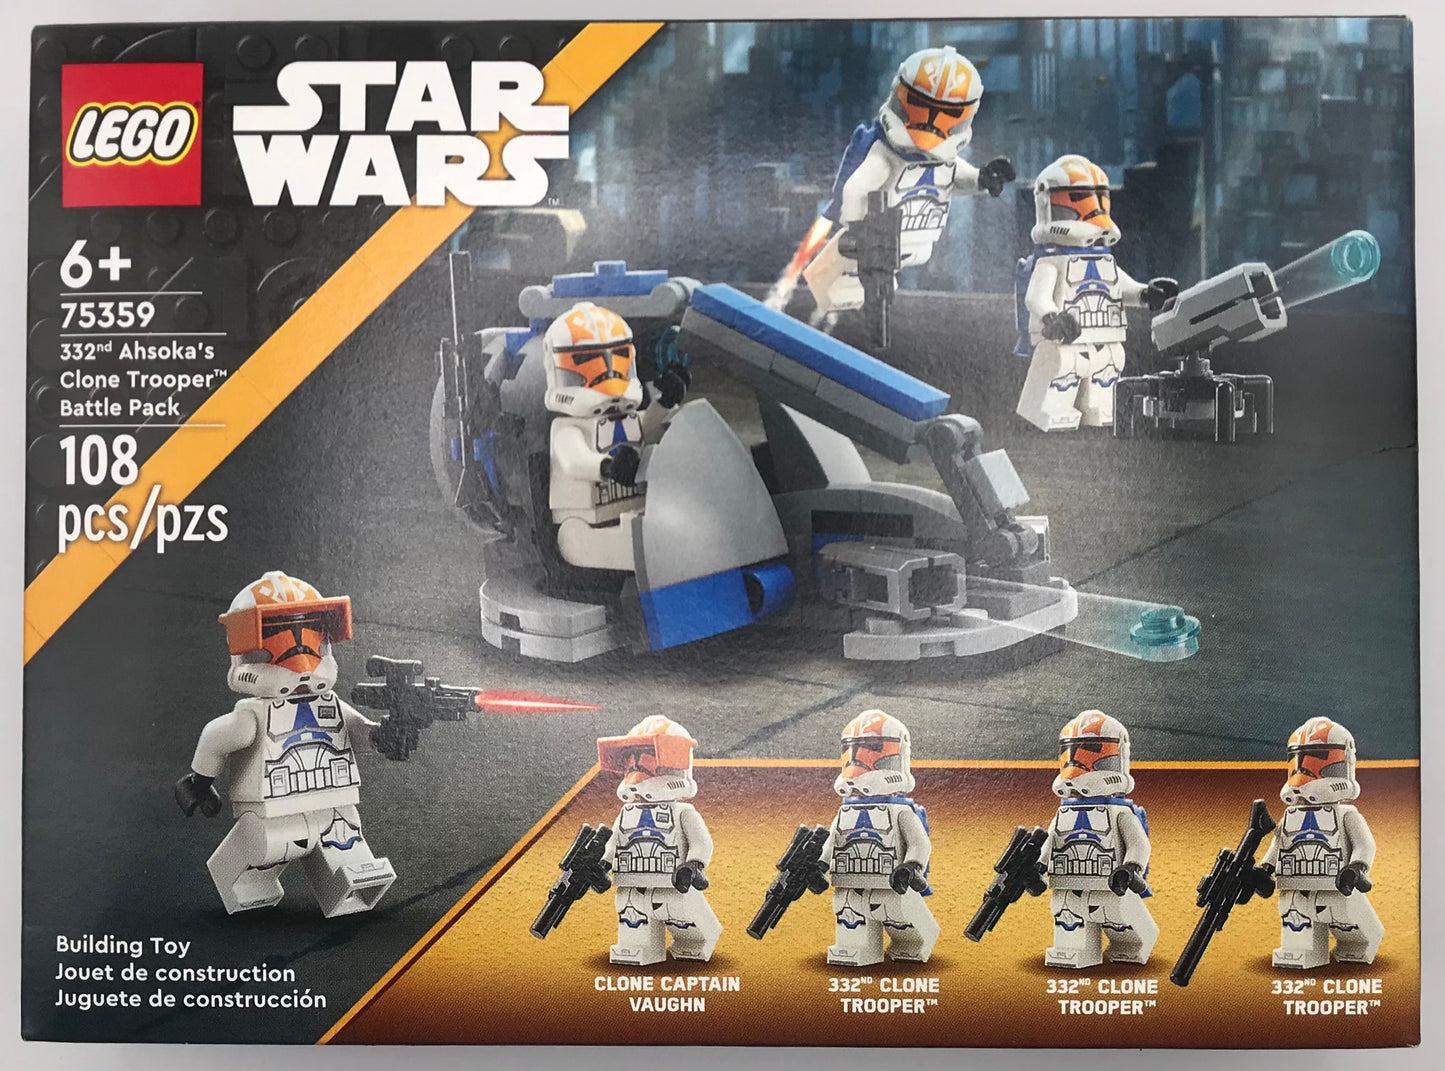 LEGO Star Wars 332nd Ahsoka's Clone Trooper Battle Pack - 75359